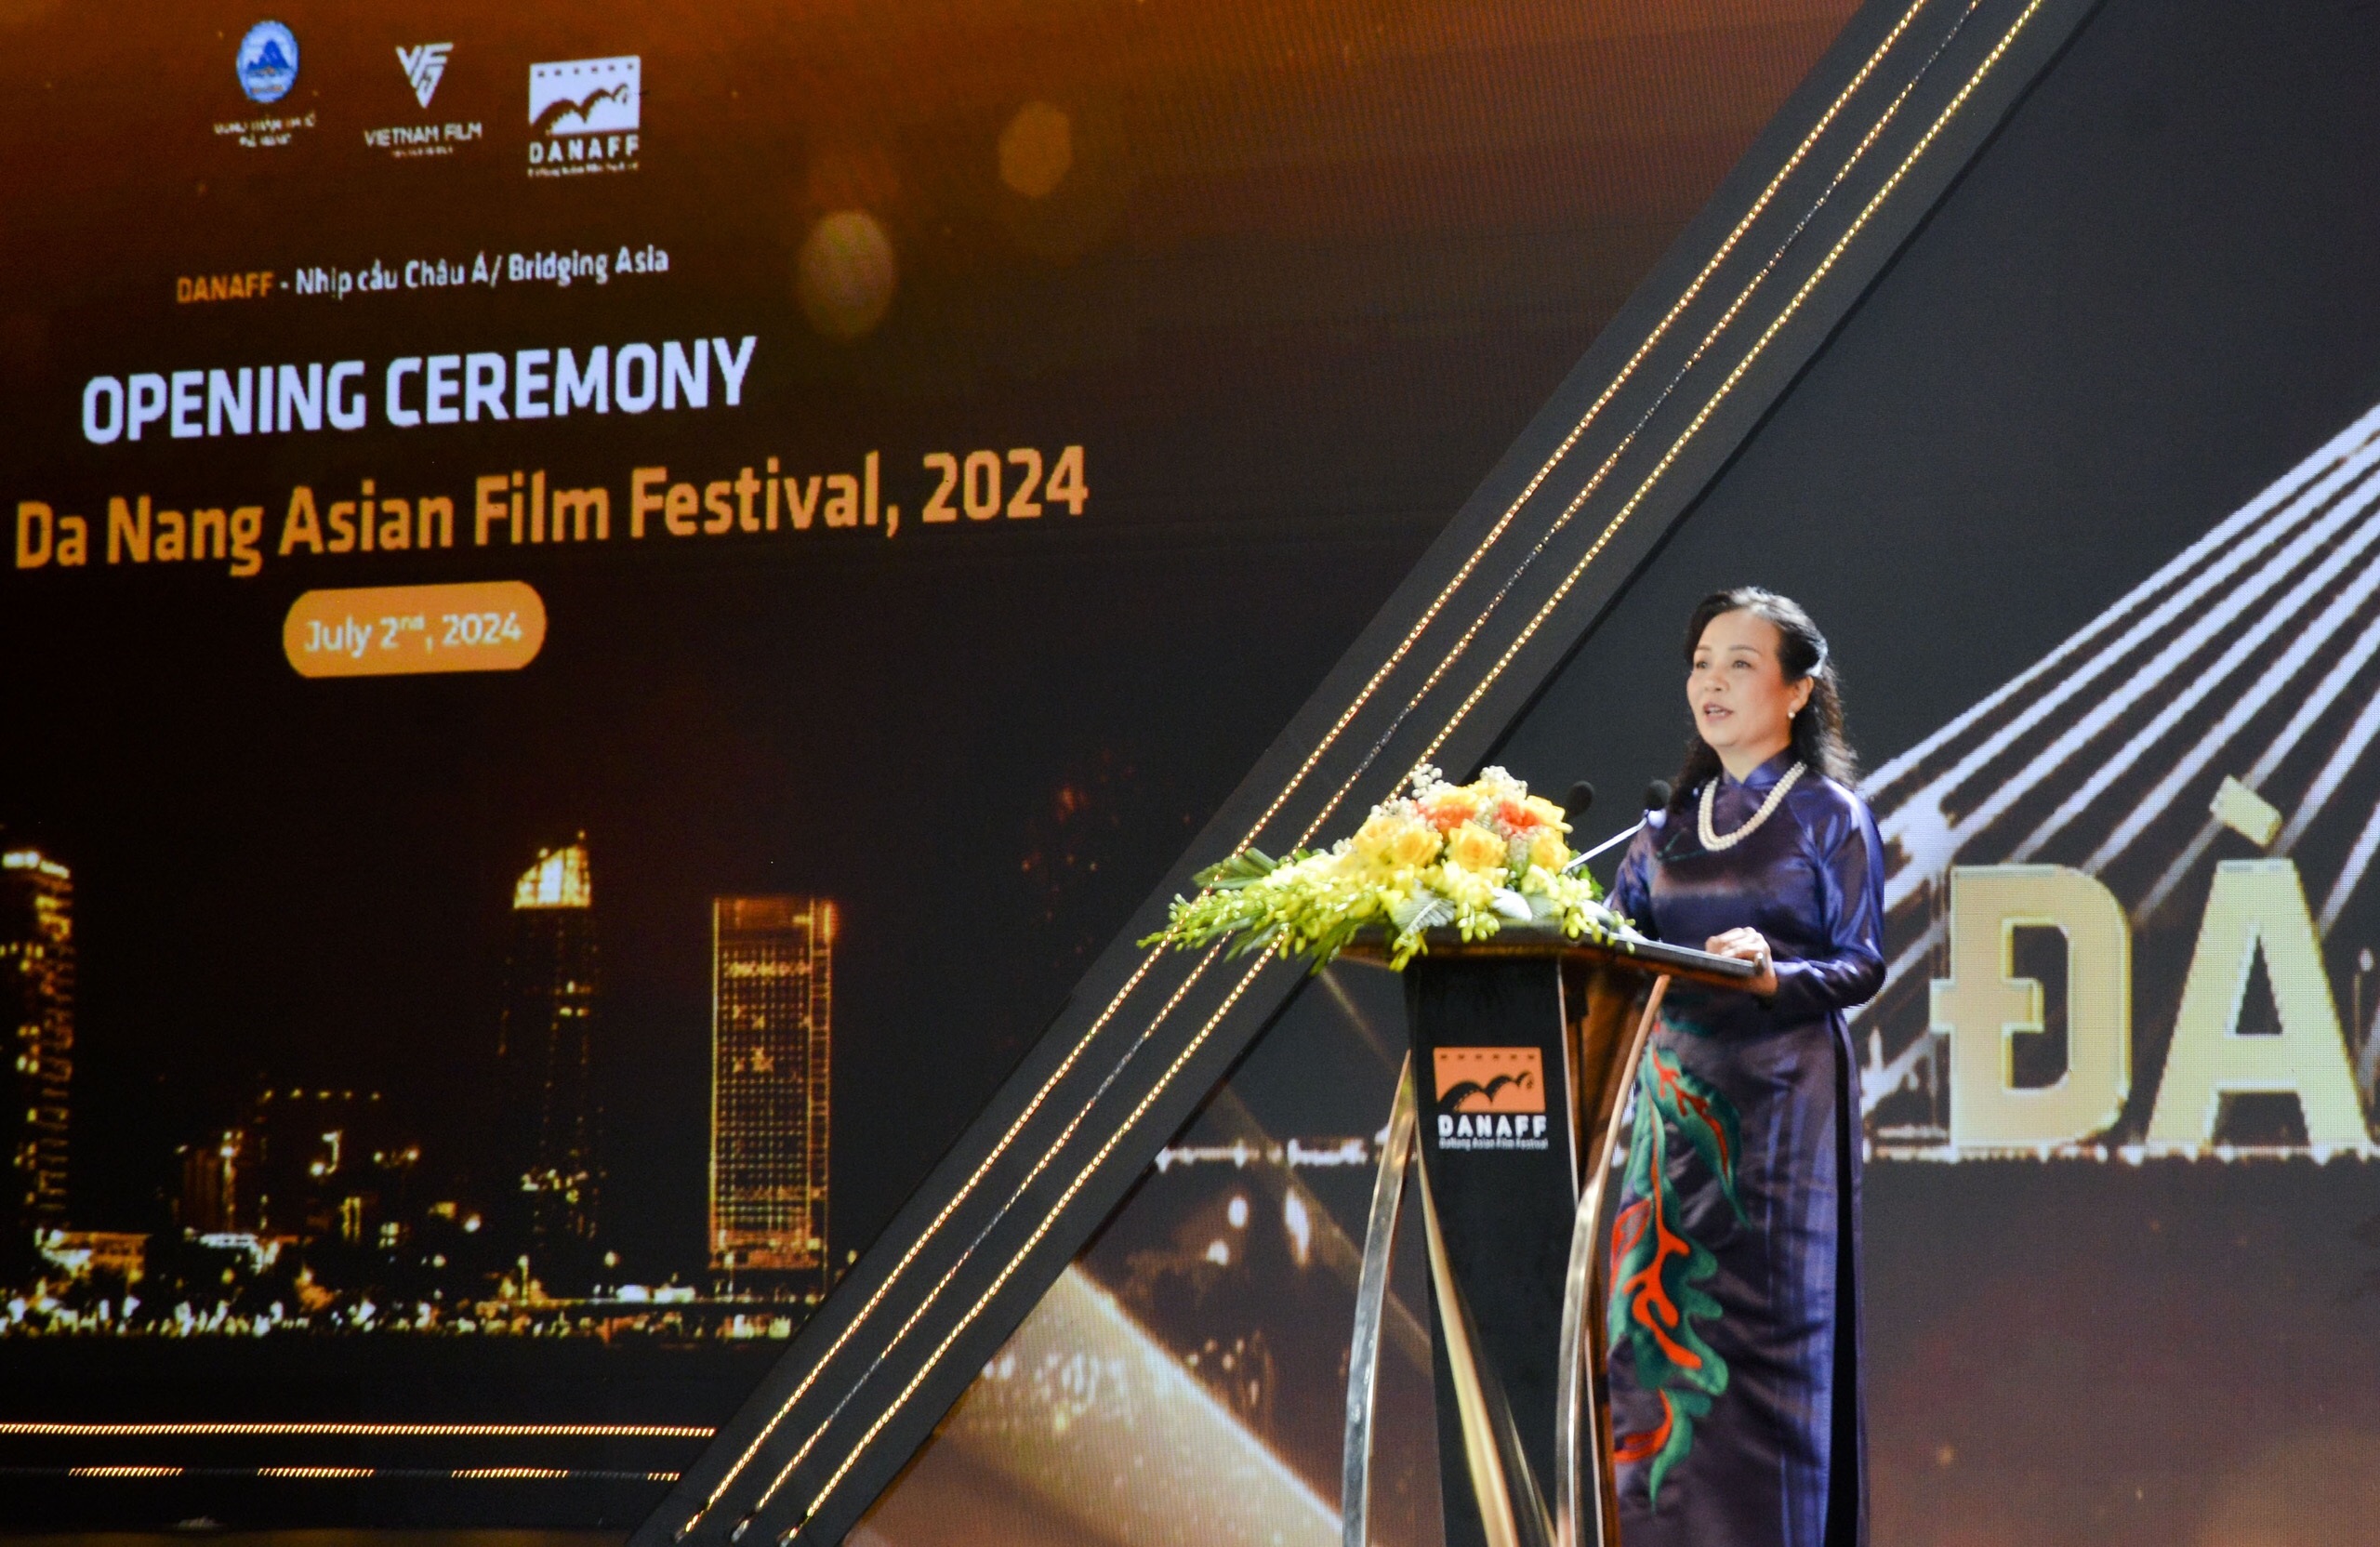 Khai mạc Liên hoan phim châu Á Đà Nẵng lần 2: Trấn Thành và Lý Hải vắng mặt - 2